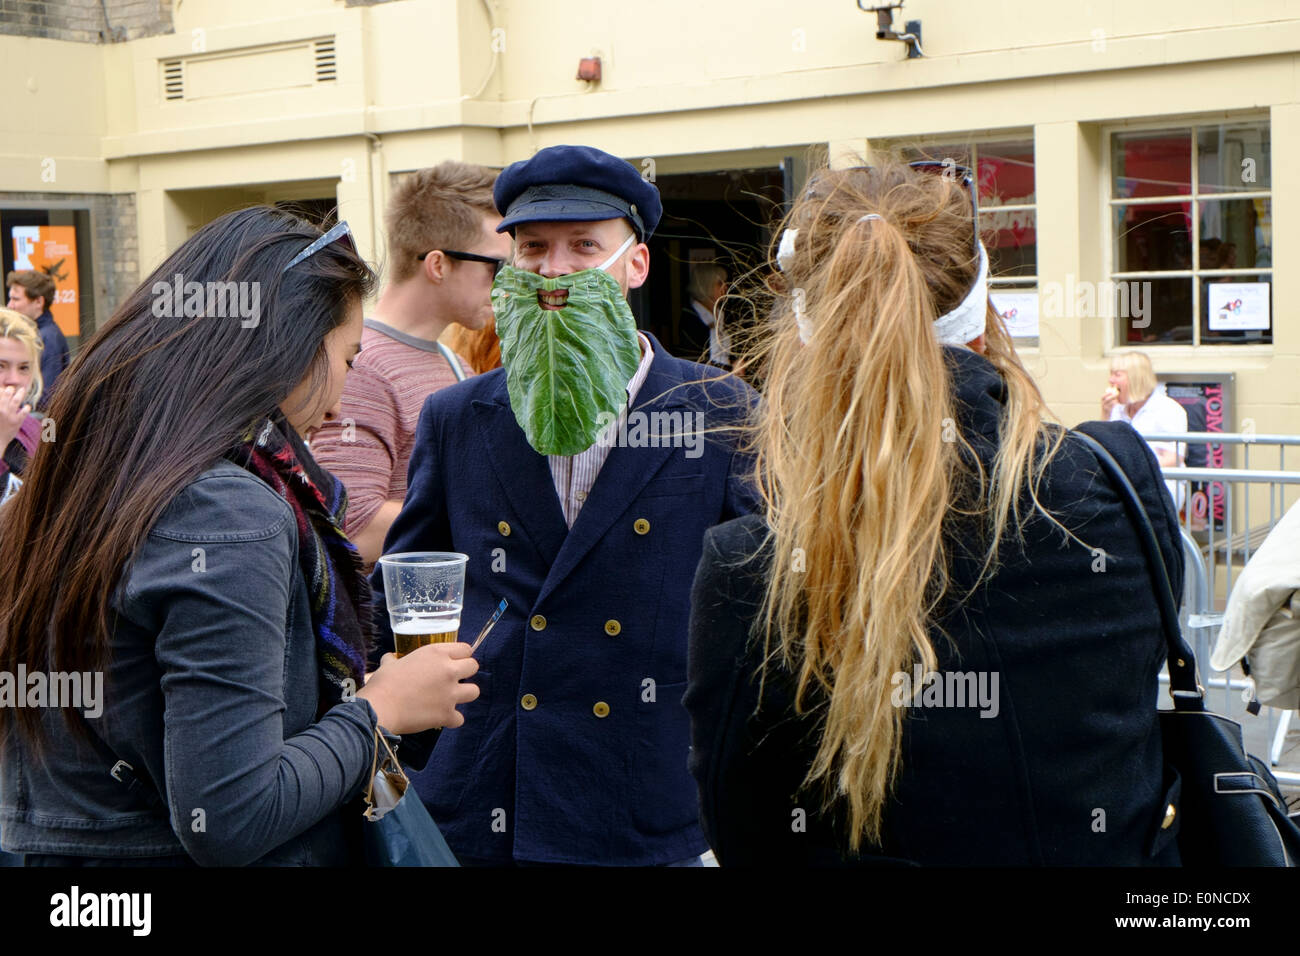 10/05/2014, BRIGHTON. Street perfprmers a promuovere gli aspetti e mostra dal Brighton Fringe, parte del Festival di Brighton che dura per tutto il mese di maggio. Foto di Julie Edwards Foto Stock